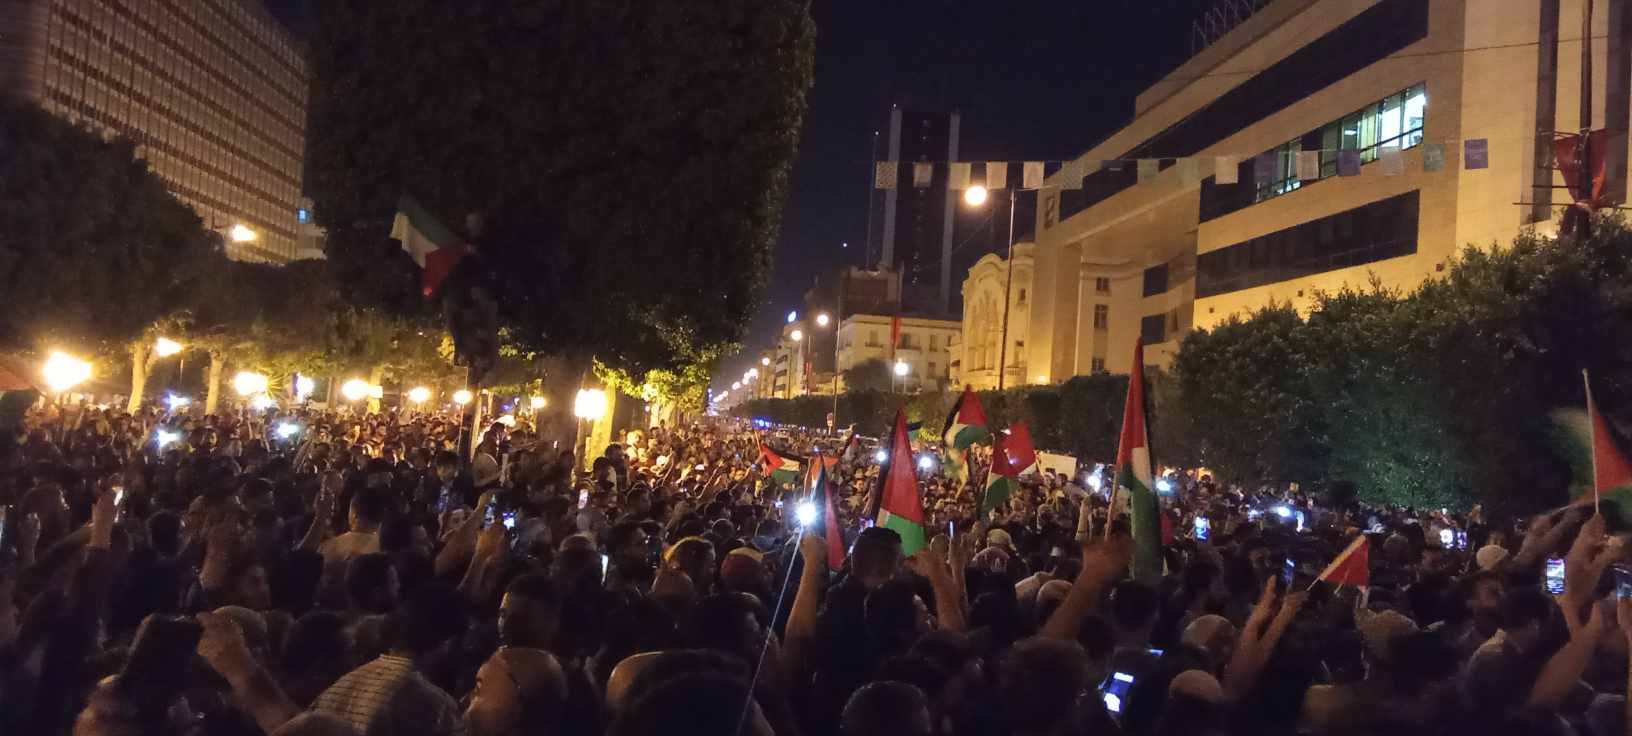 احتجاجات ليلية في تونس أمام السفارة الفرنسية رفضًا للهجمات الإسرائيلية في غزة